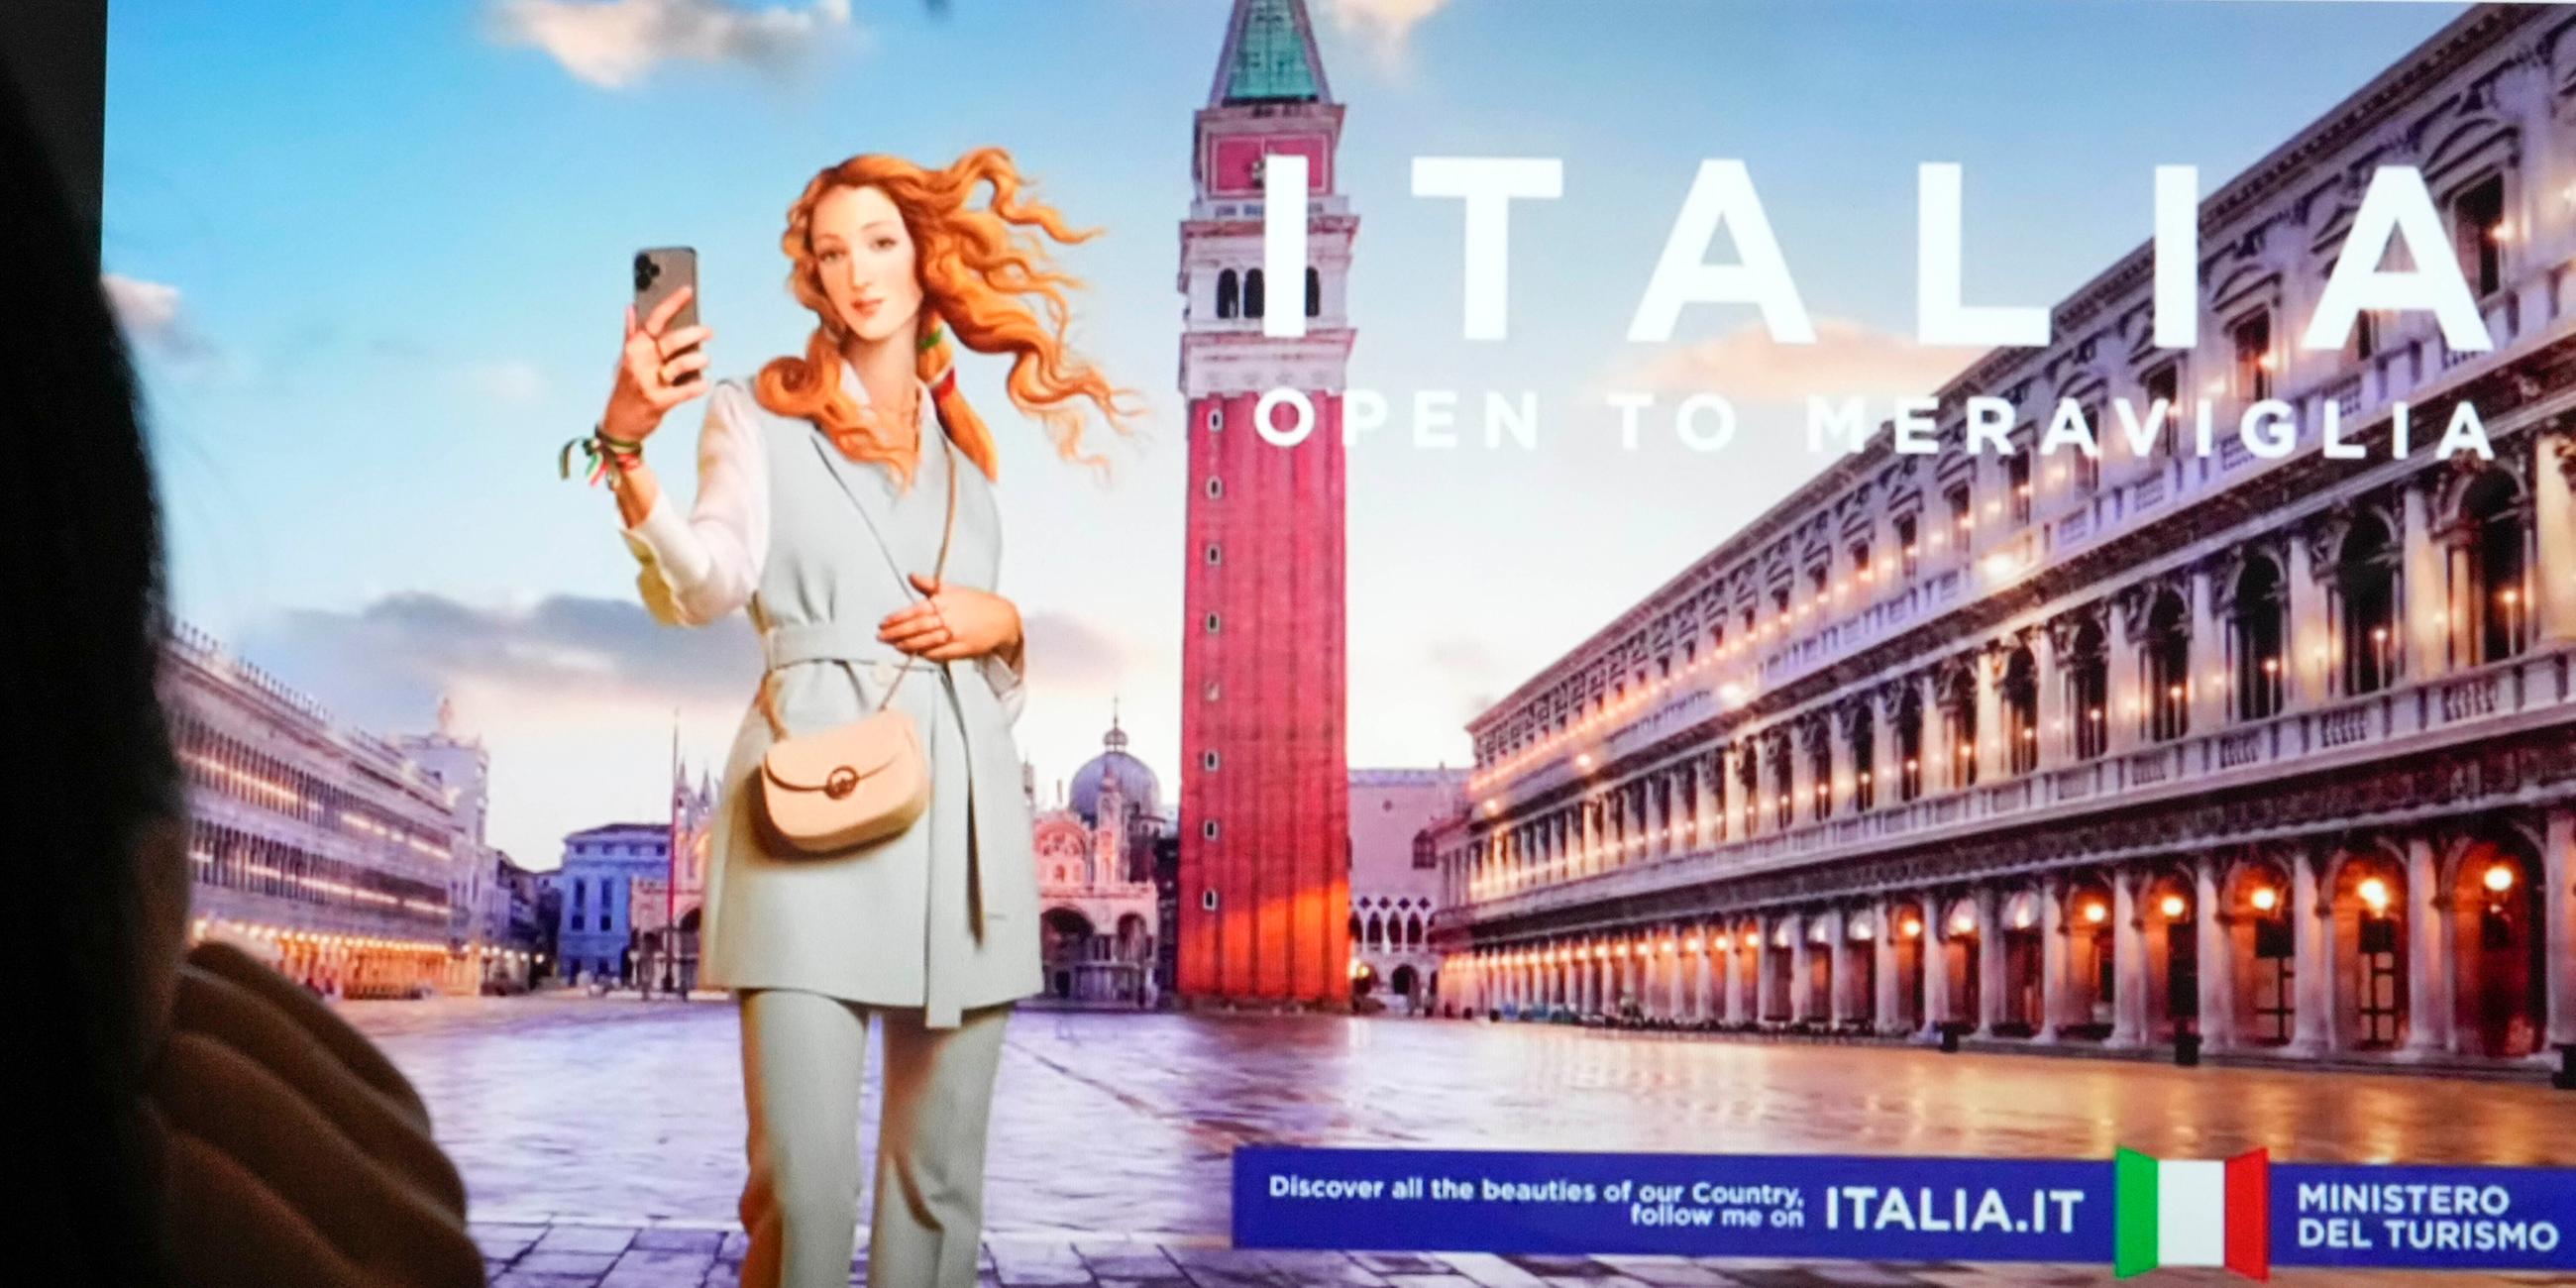 Menschen sehen sich auf einem Monitor die neueste Kampagne des italienischen Tourismusministeriums an, die Botticellis Venus zeigt, die in Rom als virtueller Influencer dargestellt wird.